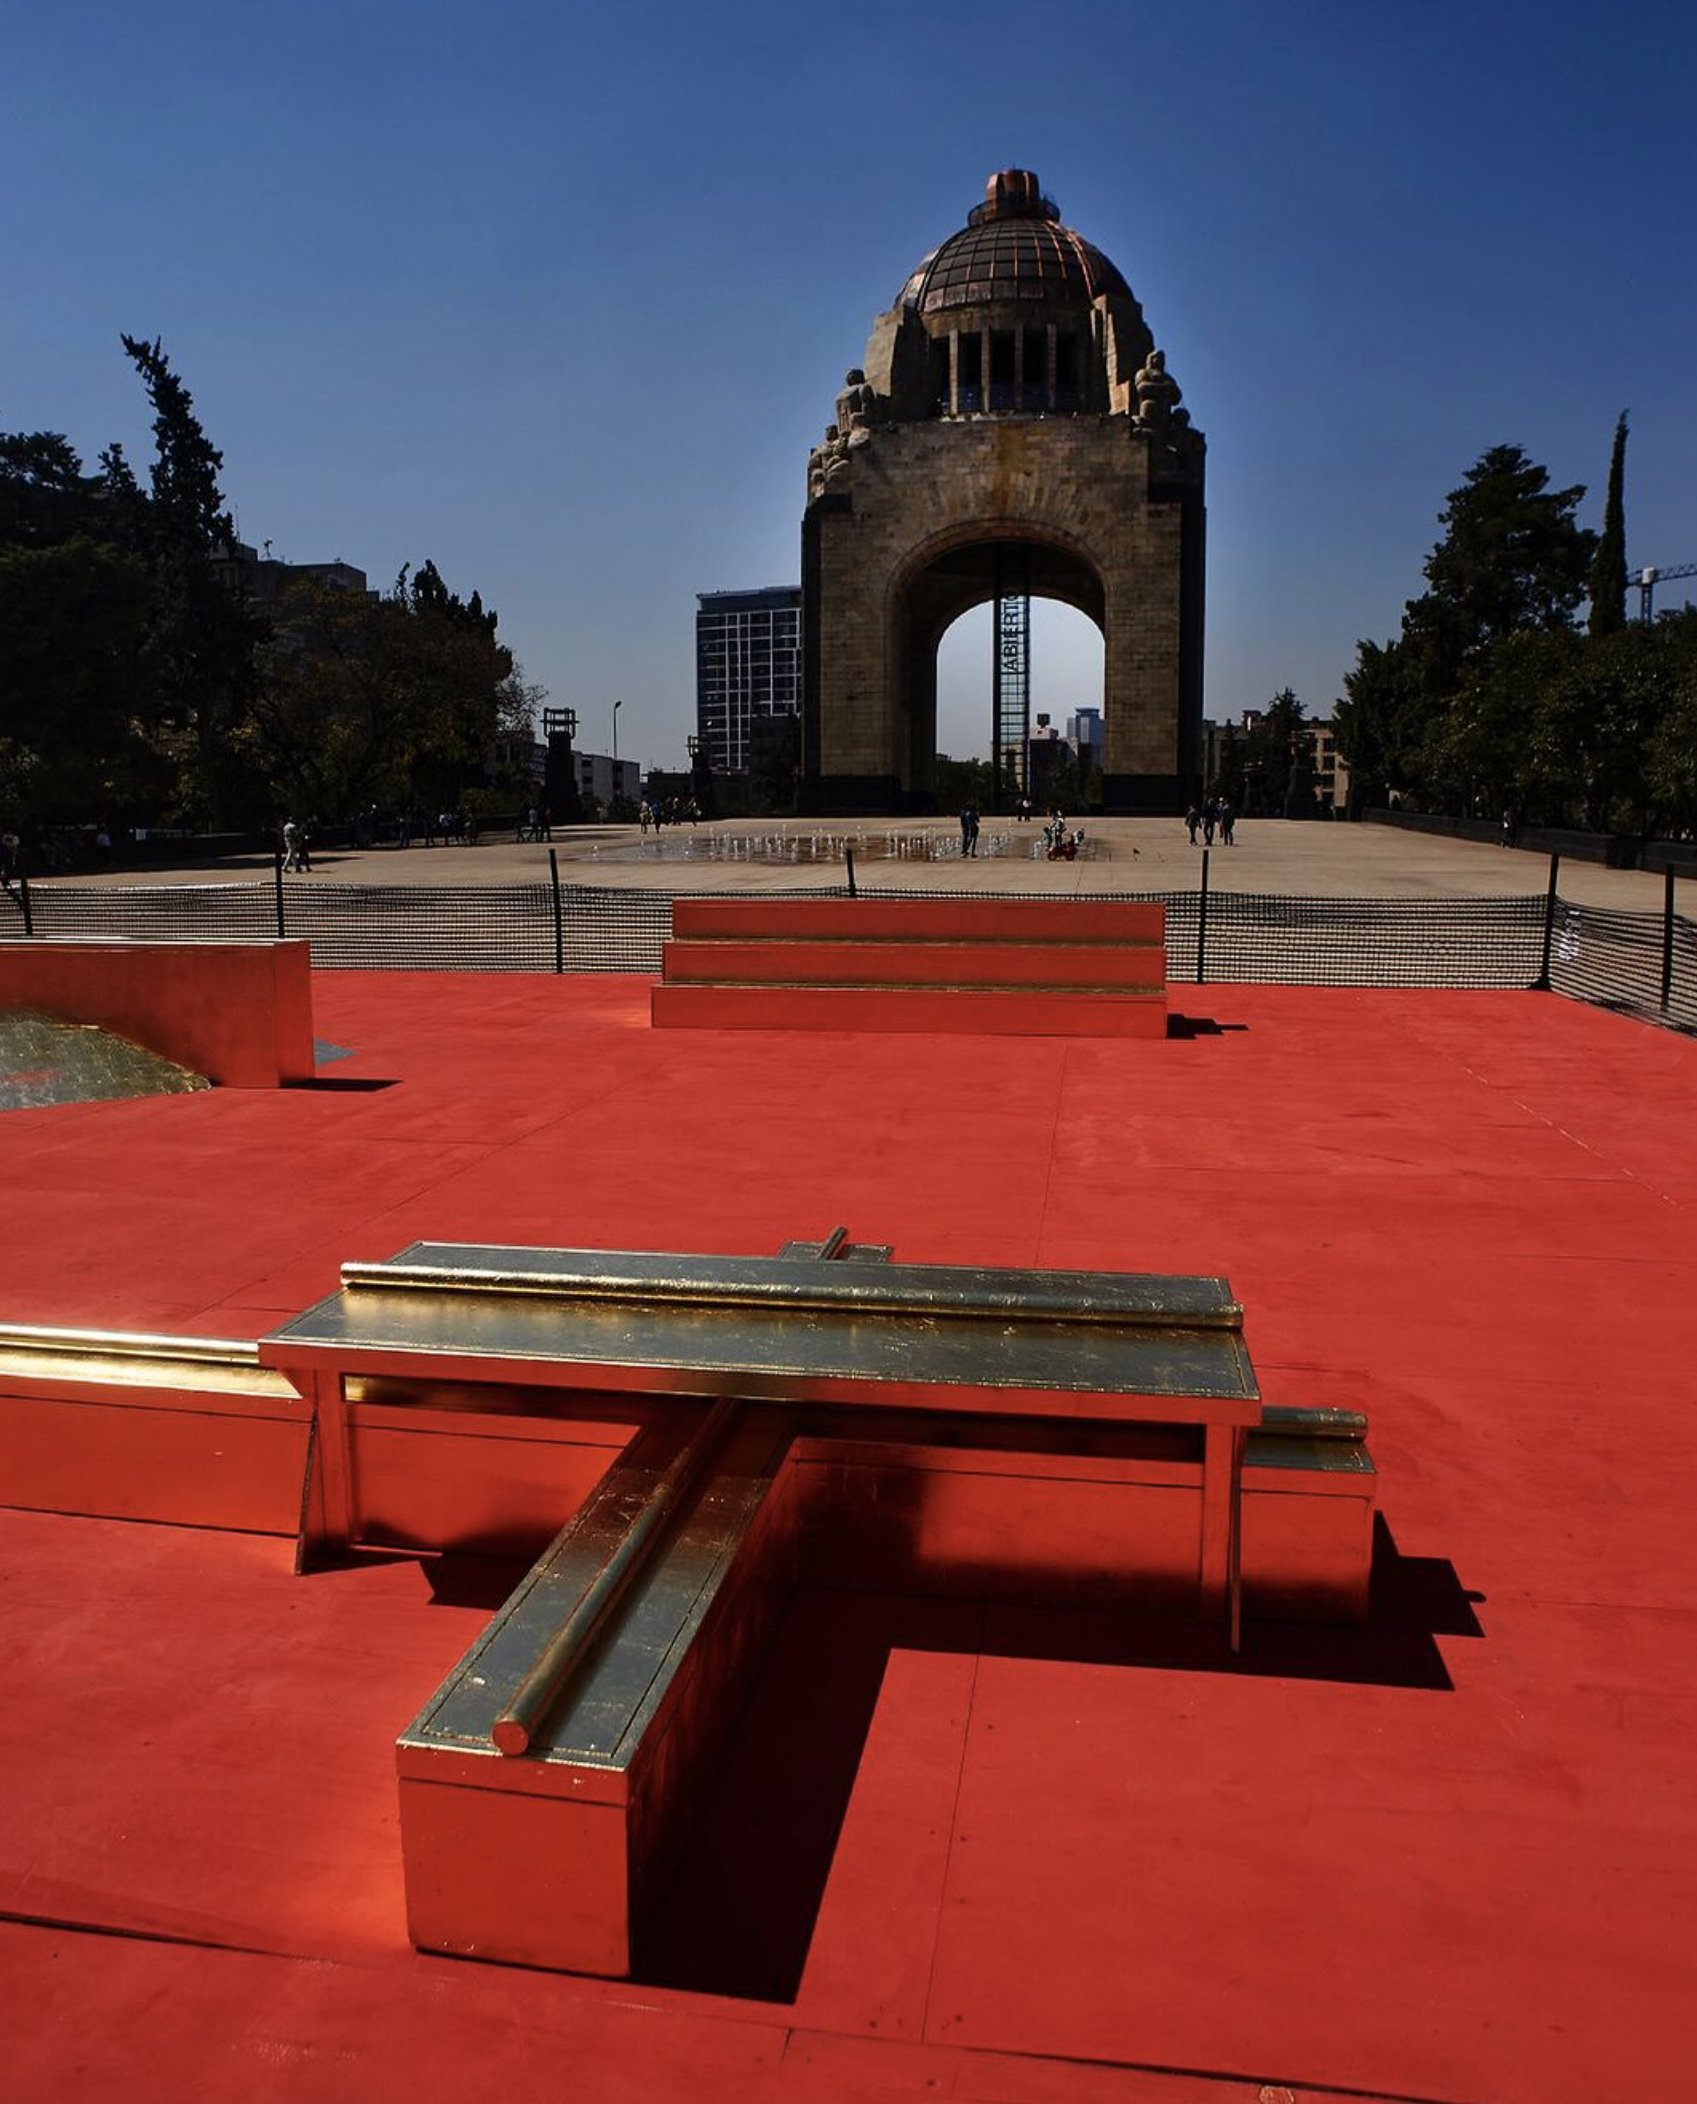 Monument to Air - Monumento a la Revolución Mexico City